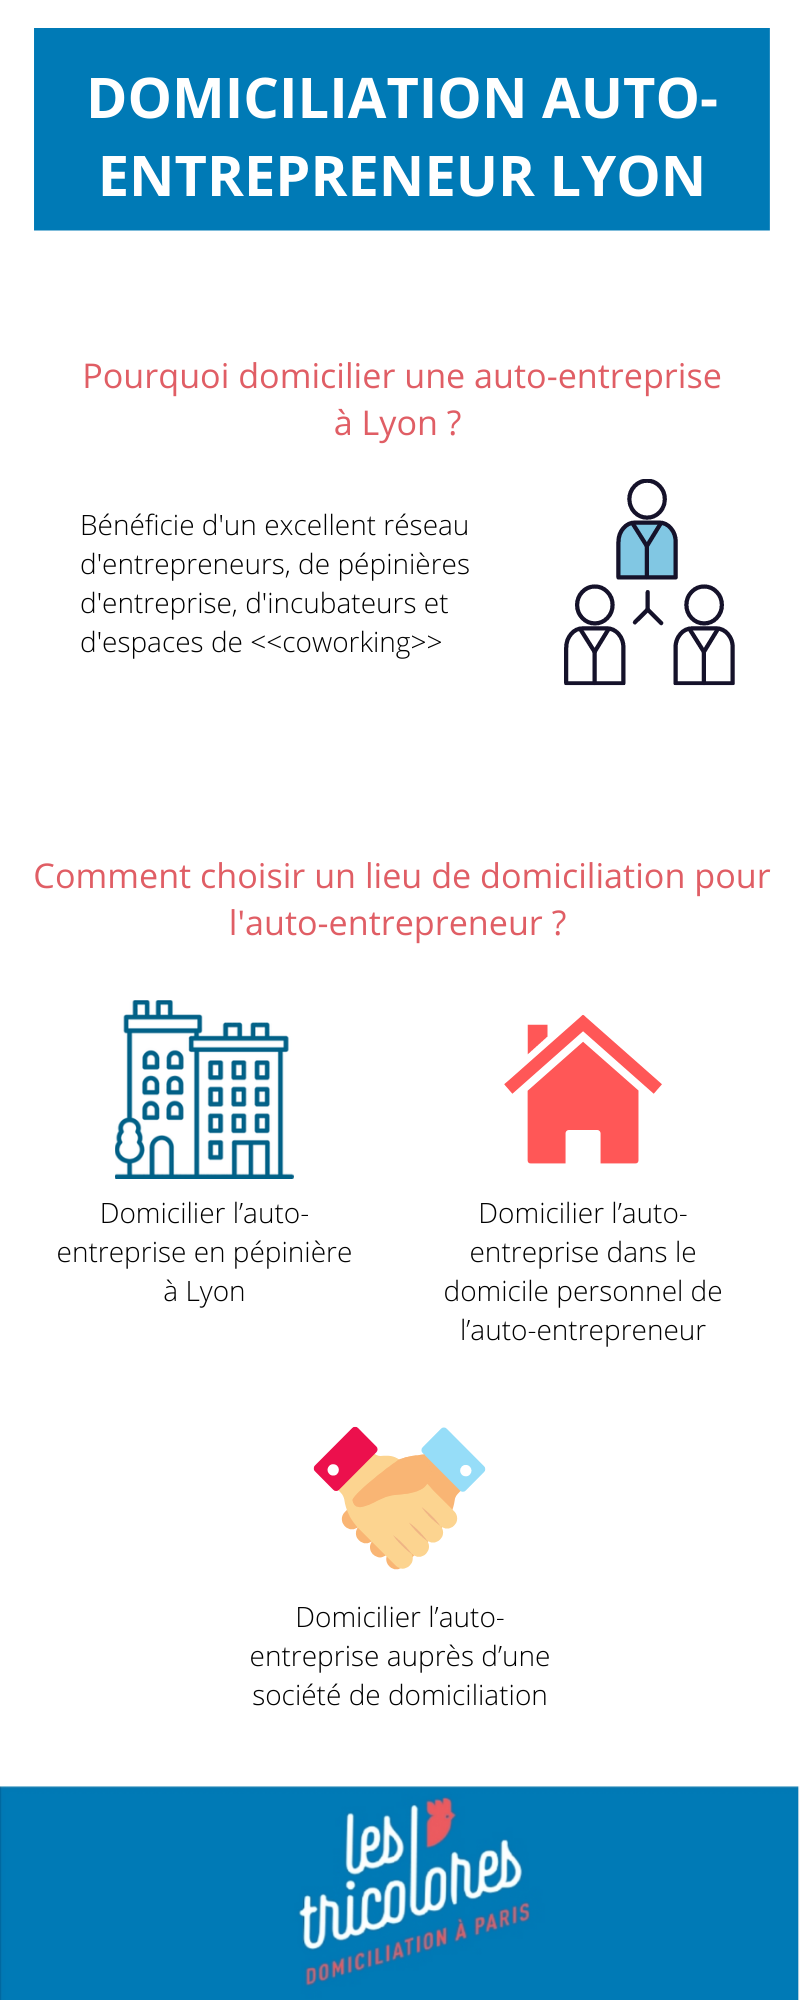 Domiciliation auto-entrepreneur Lyon